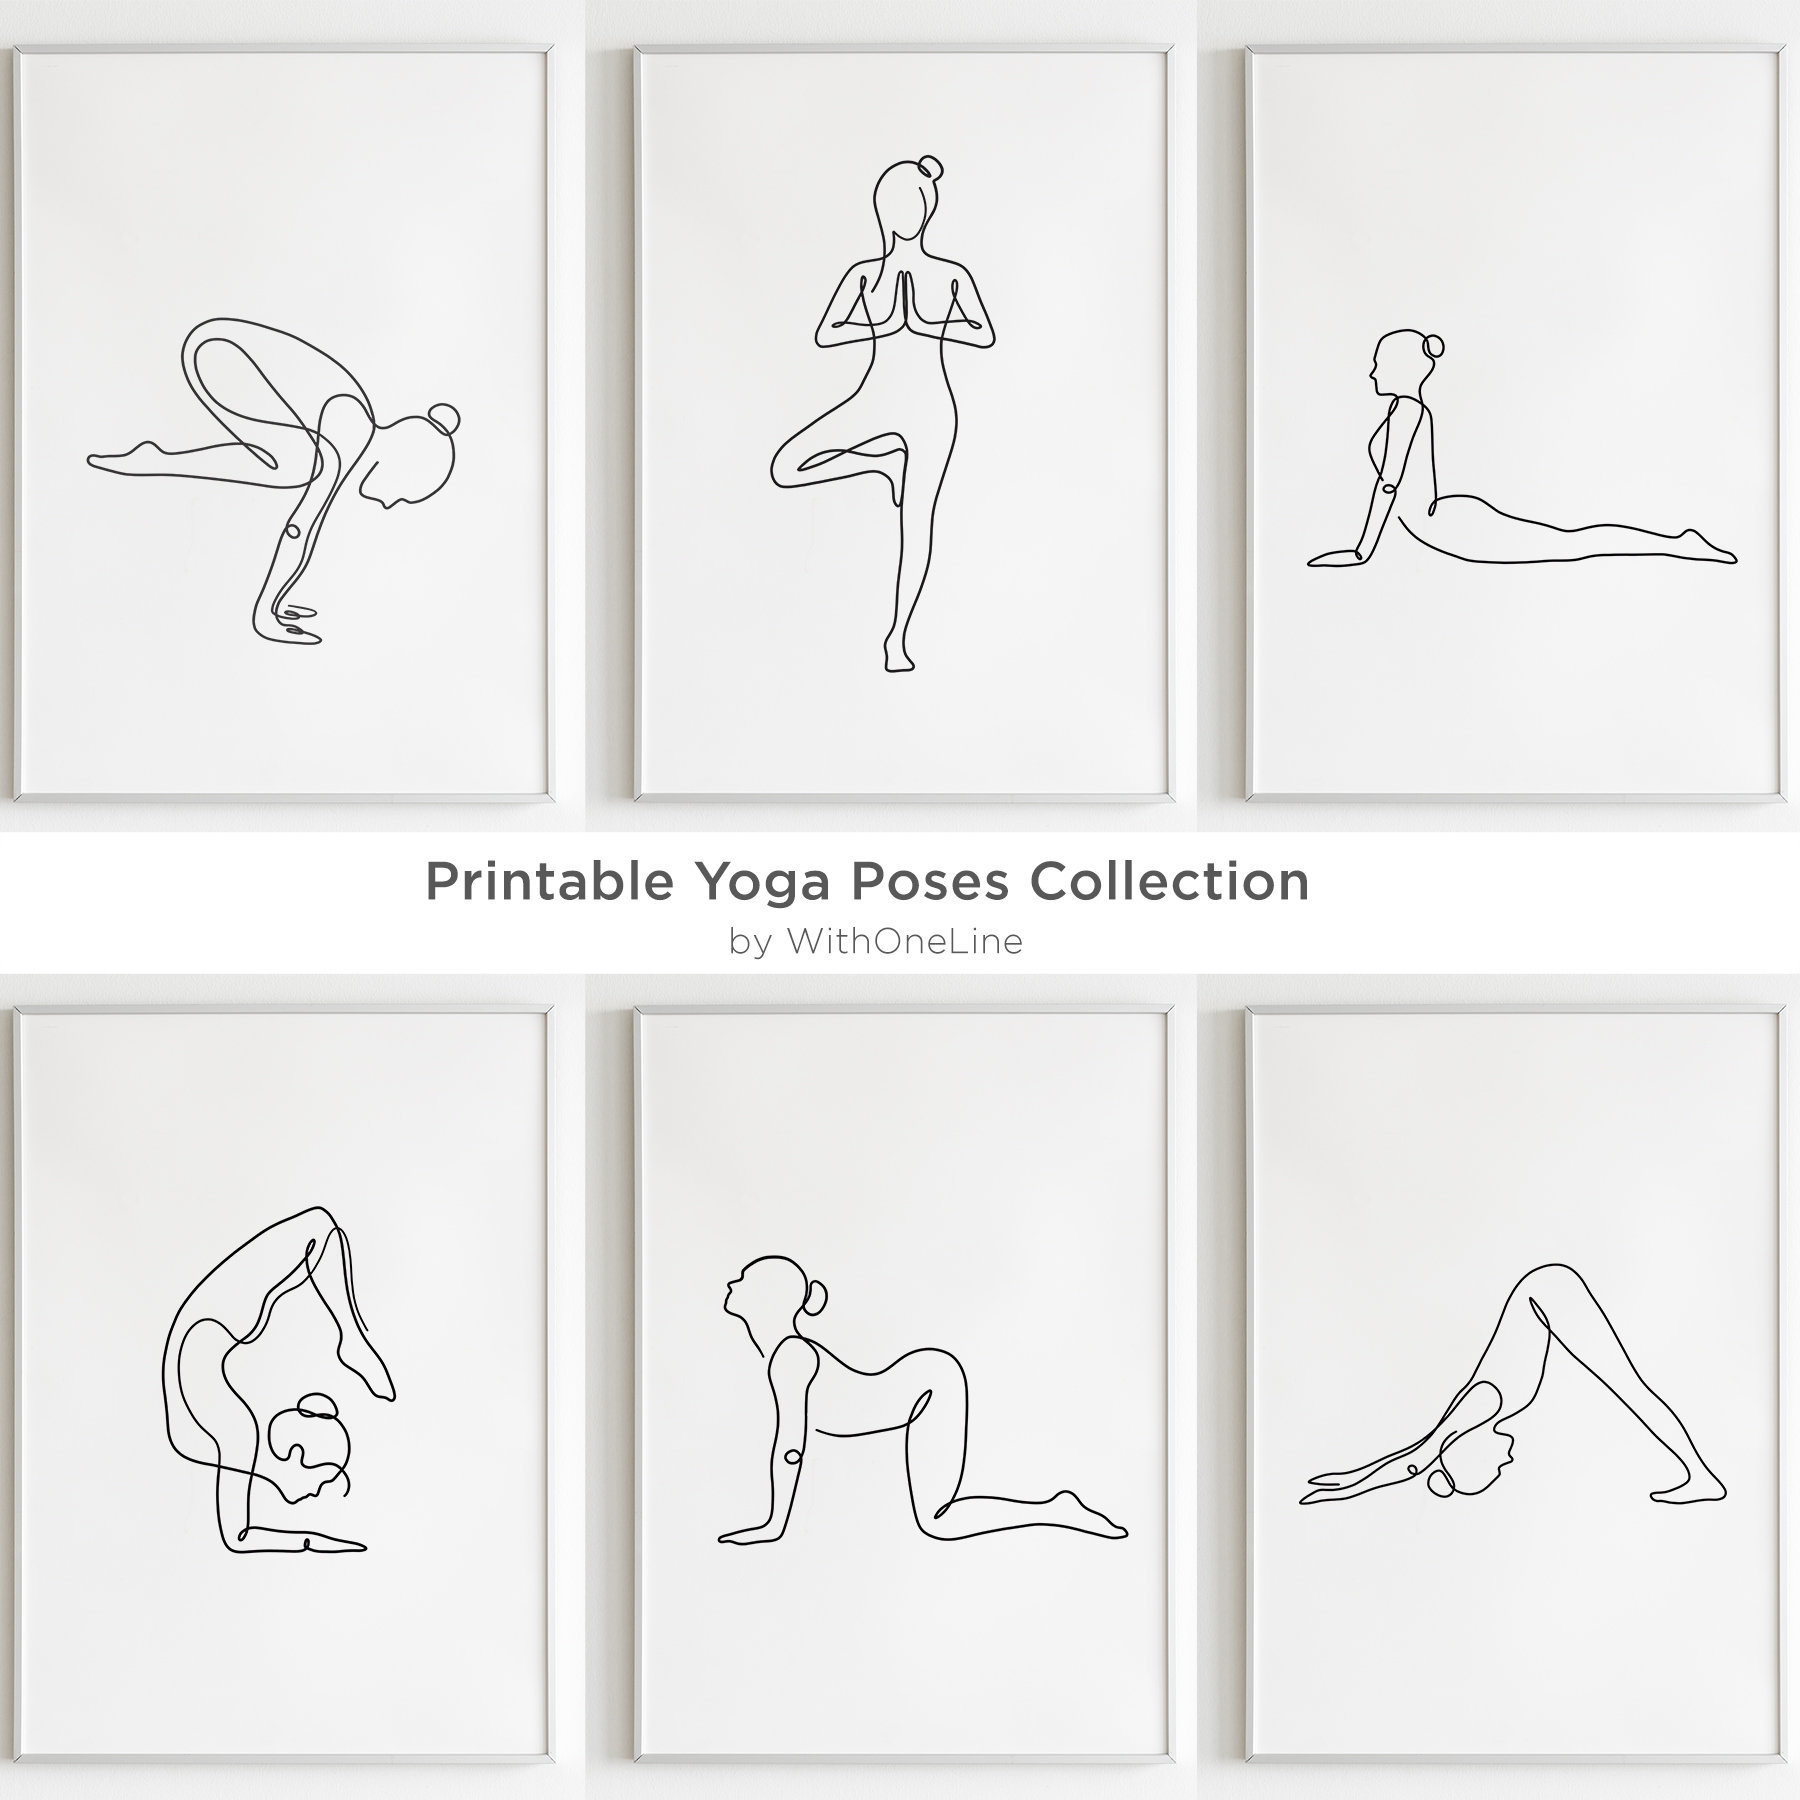 beskæftigelse Sow ulovlig Printable Yoga Art Set of 6 Prints Yoga Poses Gift Ideas - Etsy